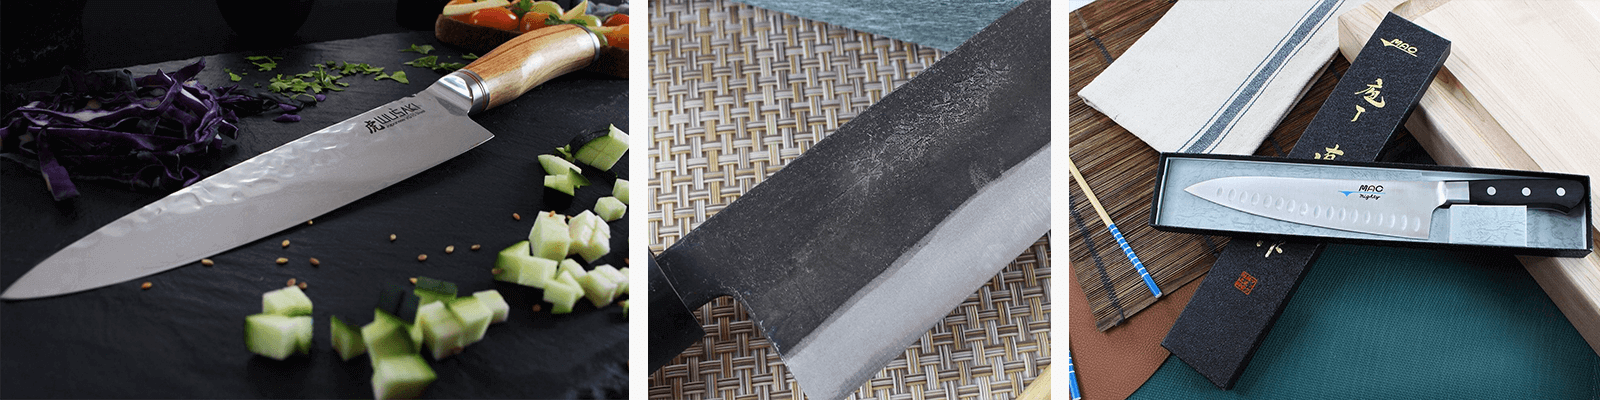 Support inox lourd pour pinces à sushi - 100% Chef - Panier des Chefs